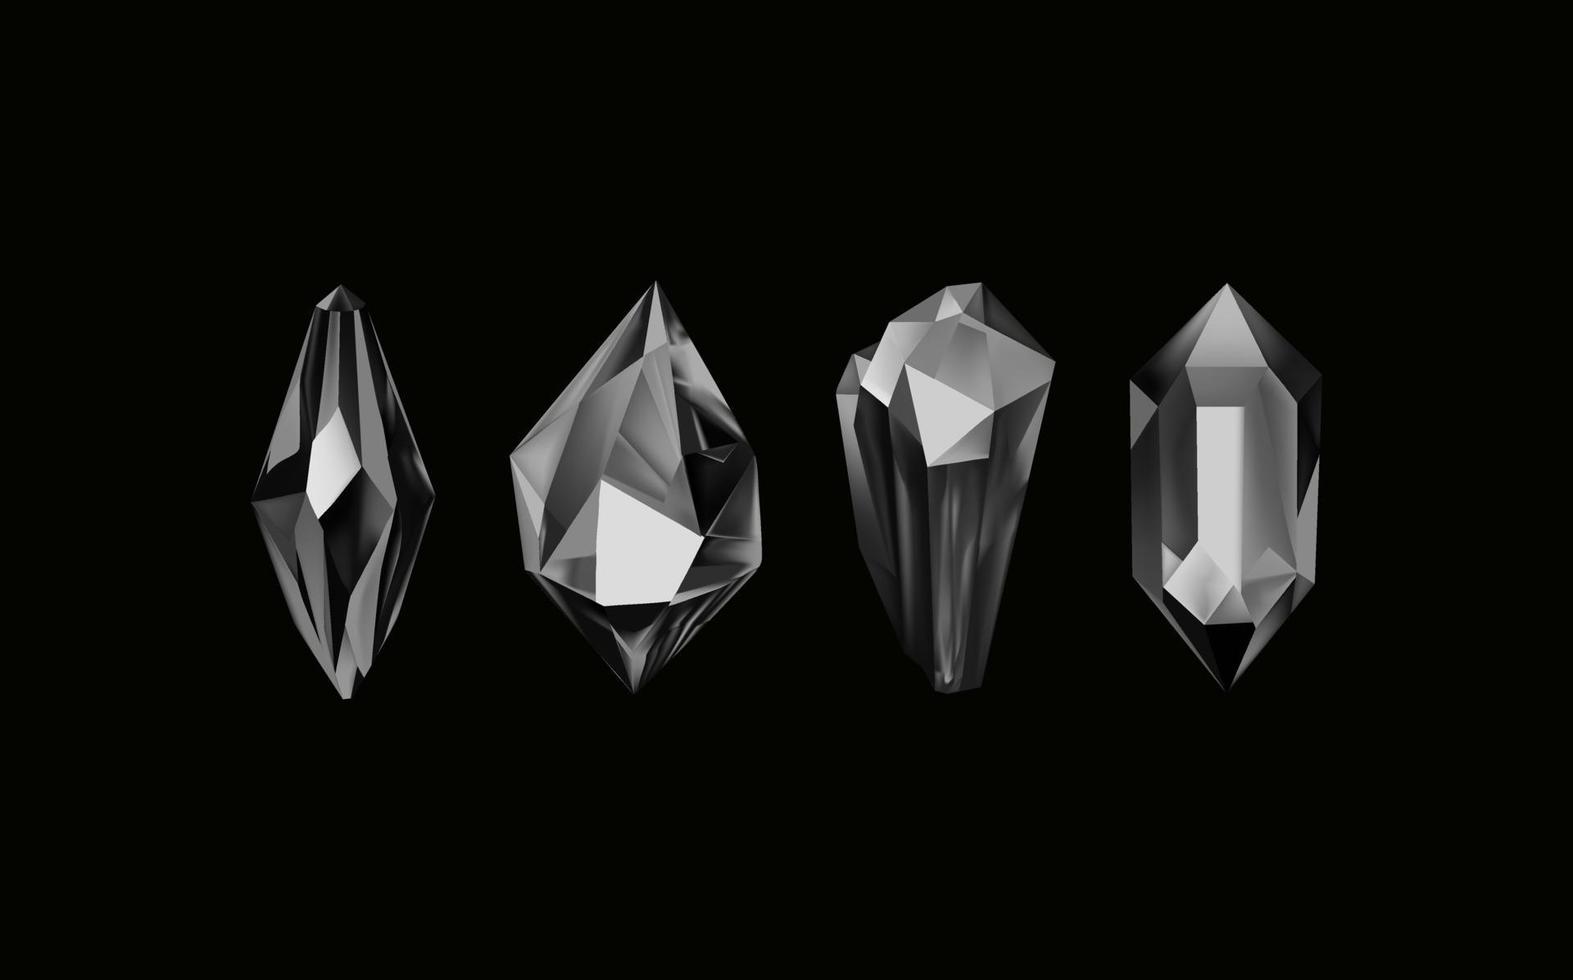 un colección de imágenes de negro diamantes de varios geométrico formas y tallas.vidrio brillante cristales con diferente sombras reflejando luz.vector realista conjunto de resplandor piedra preciosa o vistoso hielo. vector